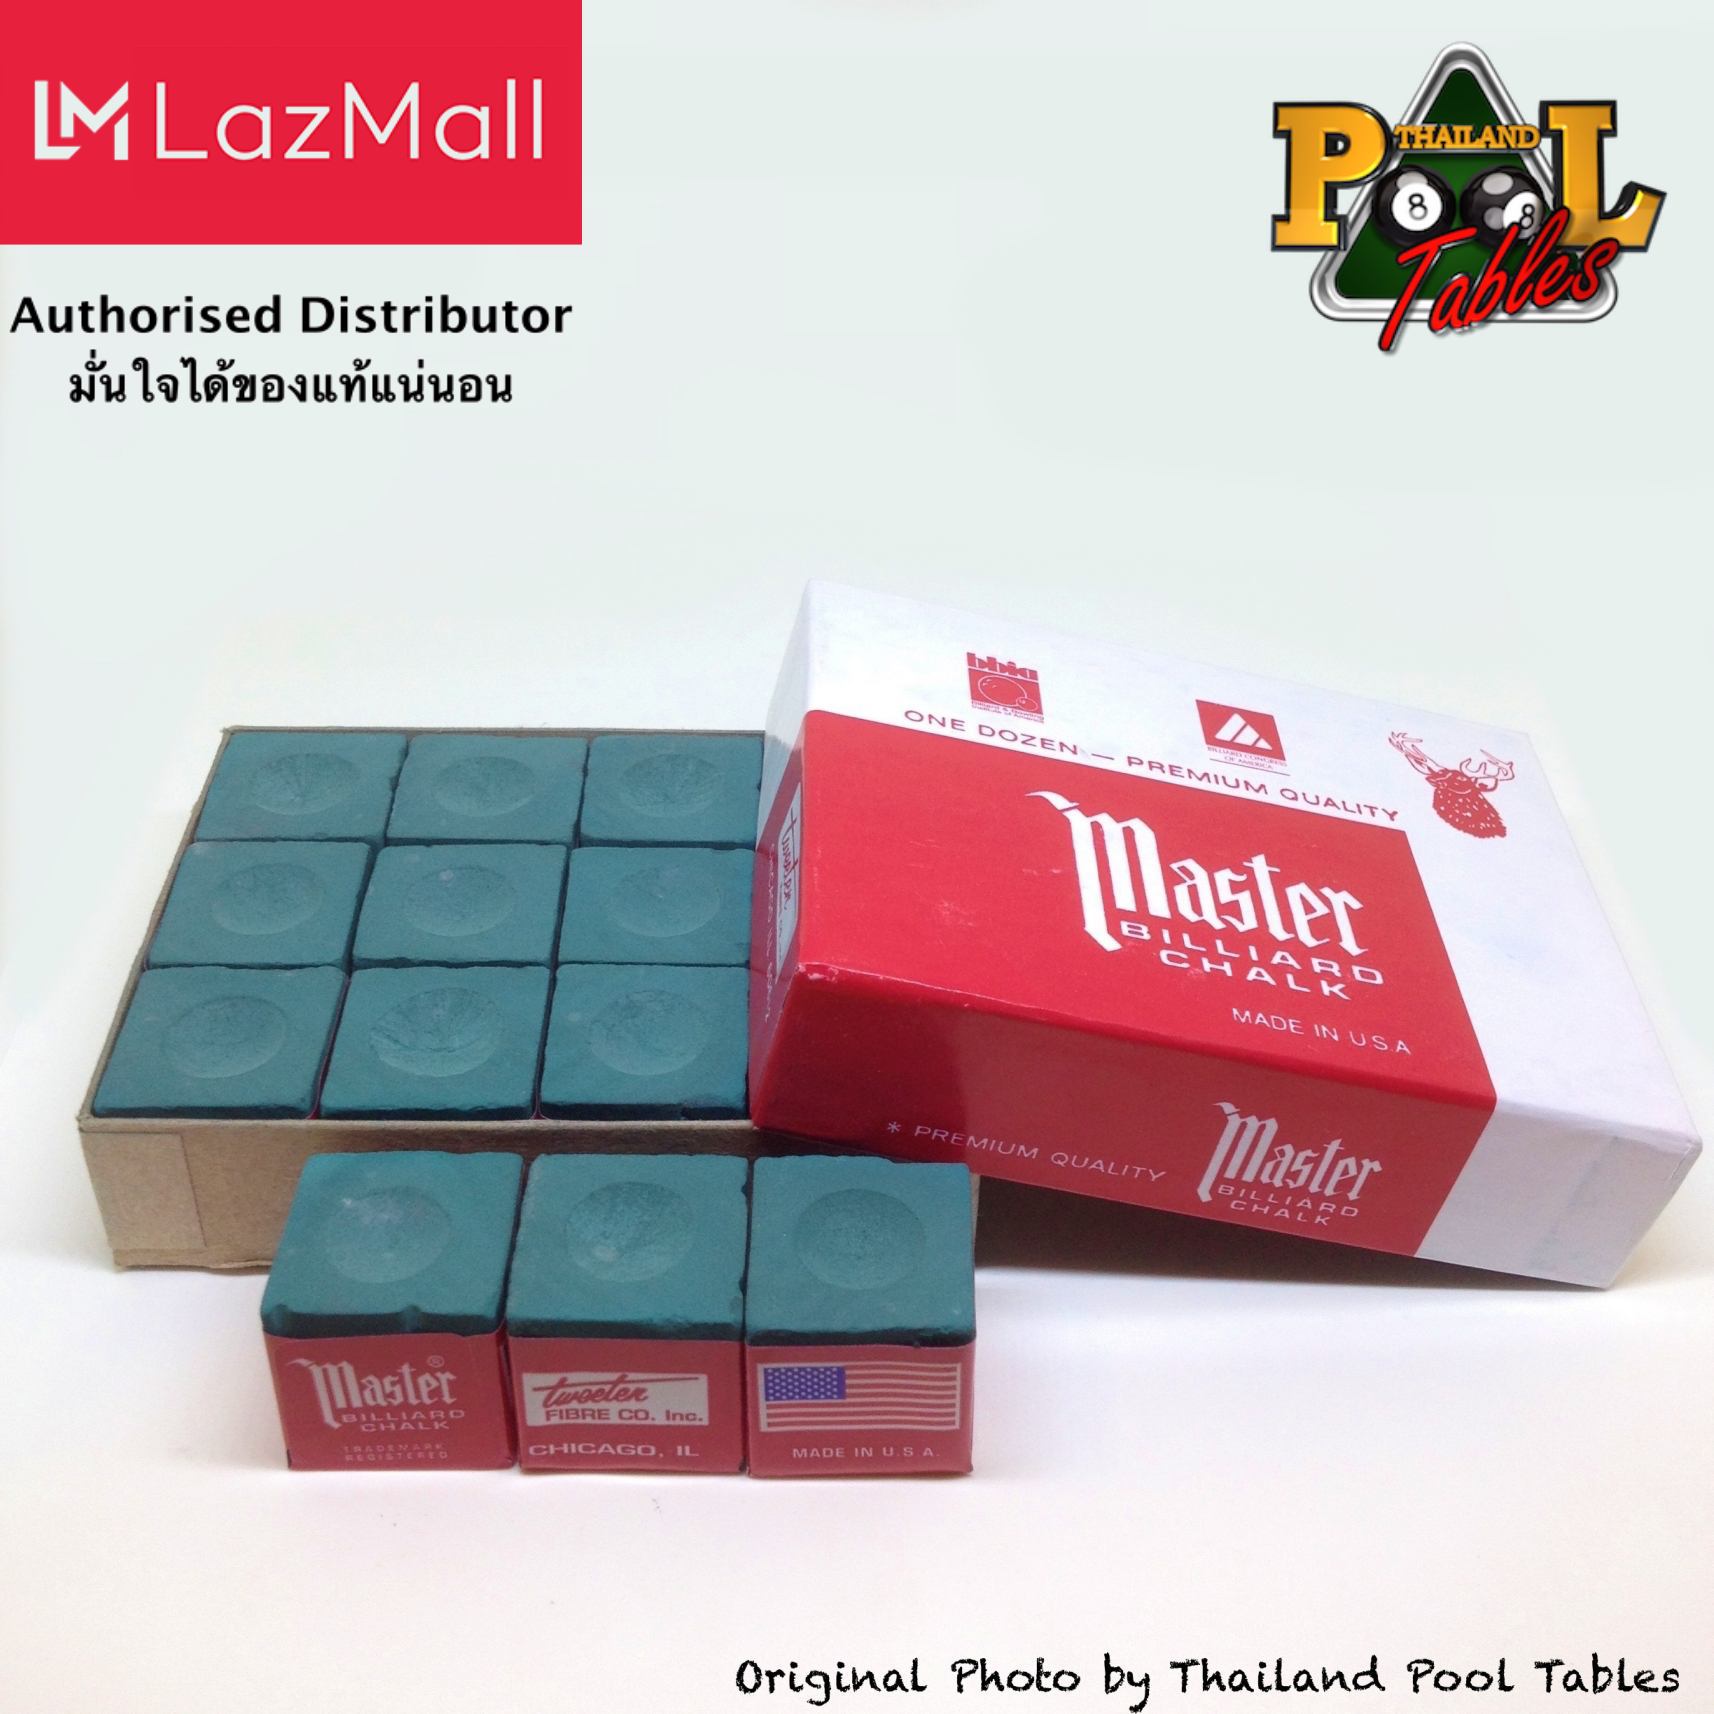 ชอล์คฝนหัวคิวมาสเตอร์ Master Billiard/Pool Cue Chalk Box, 12 Cubes สี Charcoal สี Charcoal